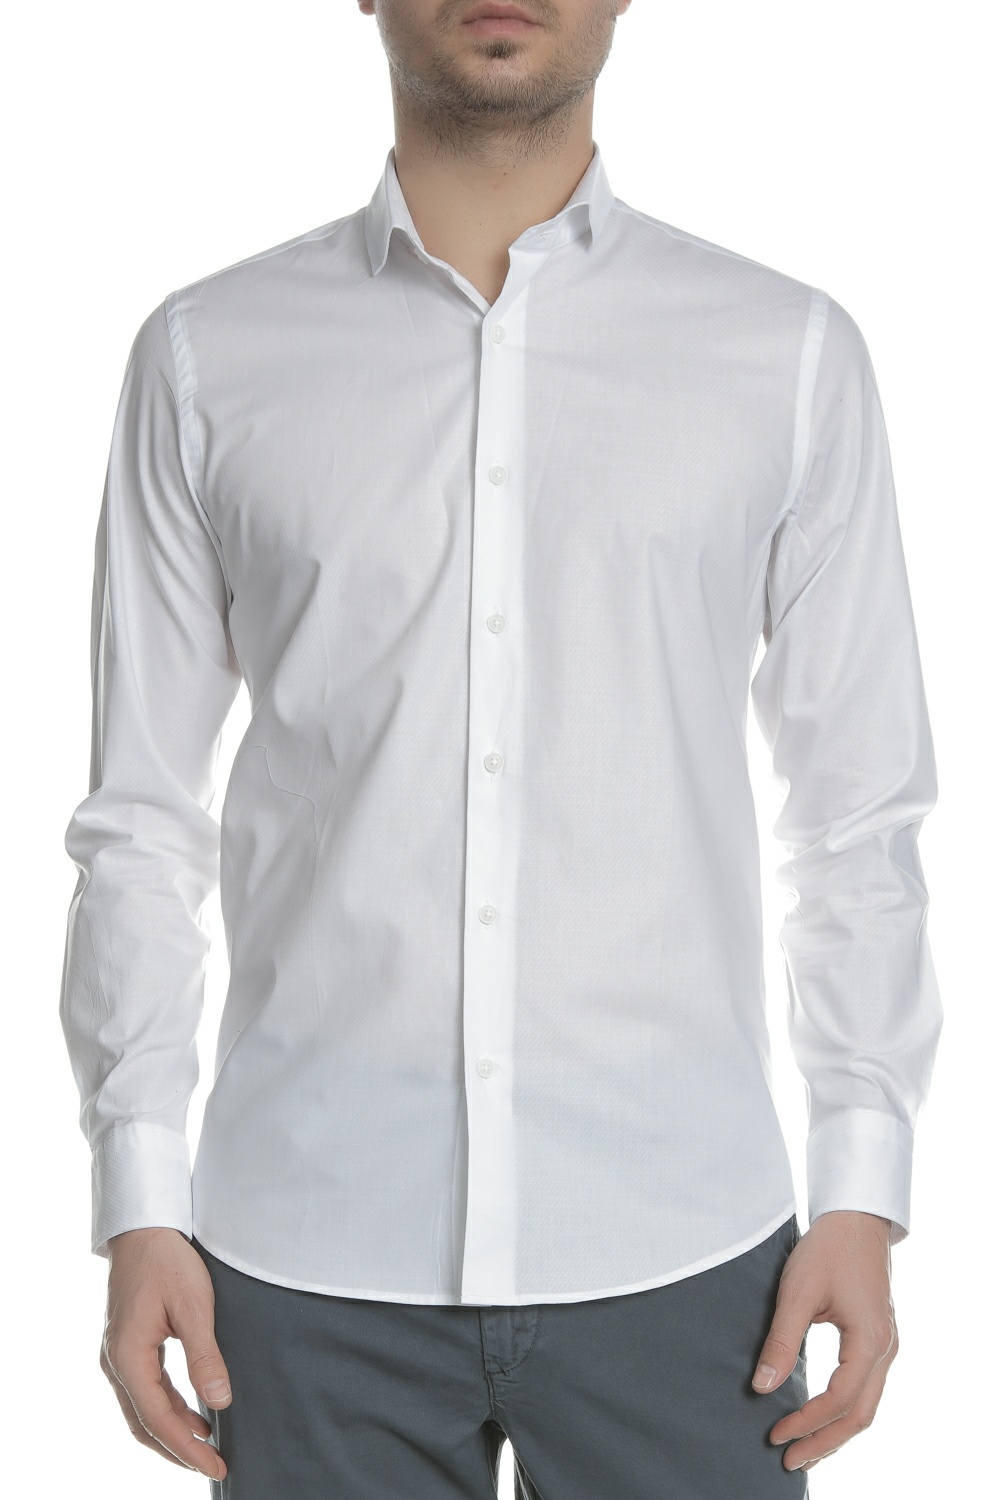 Ανδρικά/Ρούχα/Πουκάμισα/Μακρυμάνικα SSEINSE - Ανδρικό μακρυμάνικο πουκάμισο SSEINSE λευκό